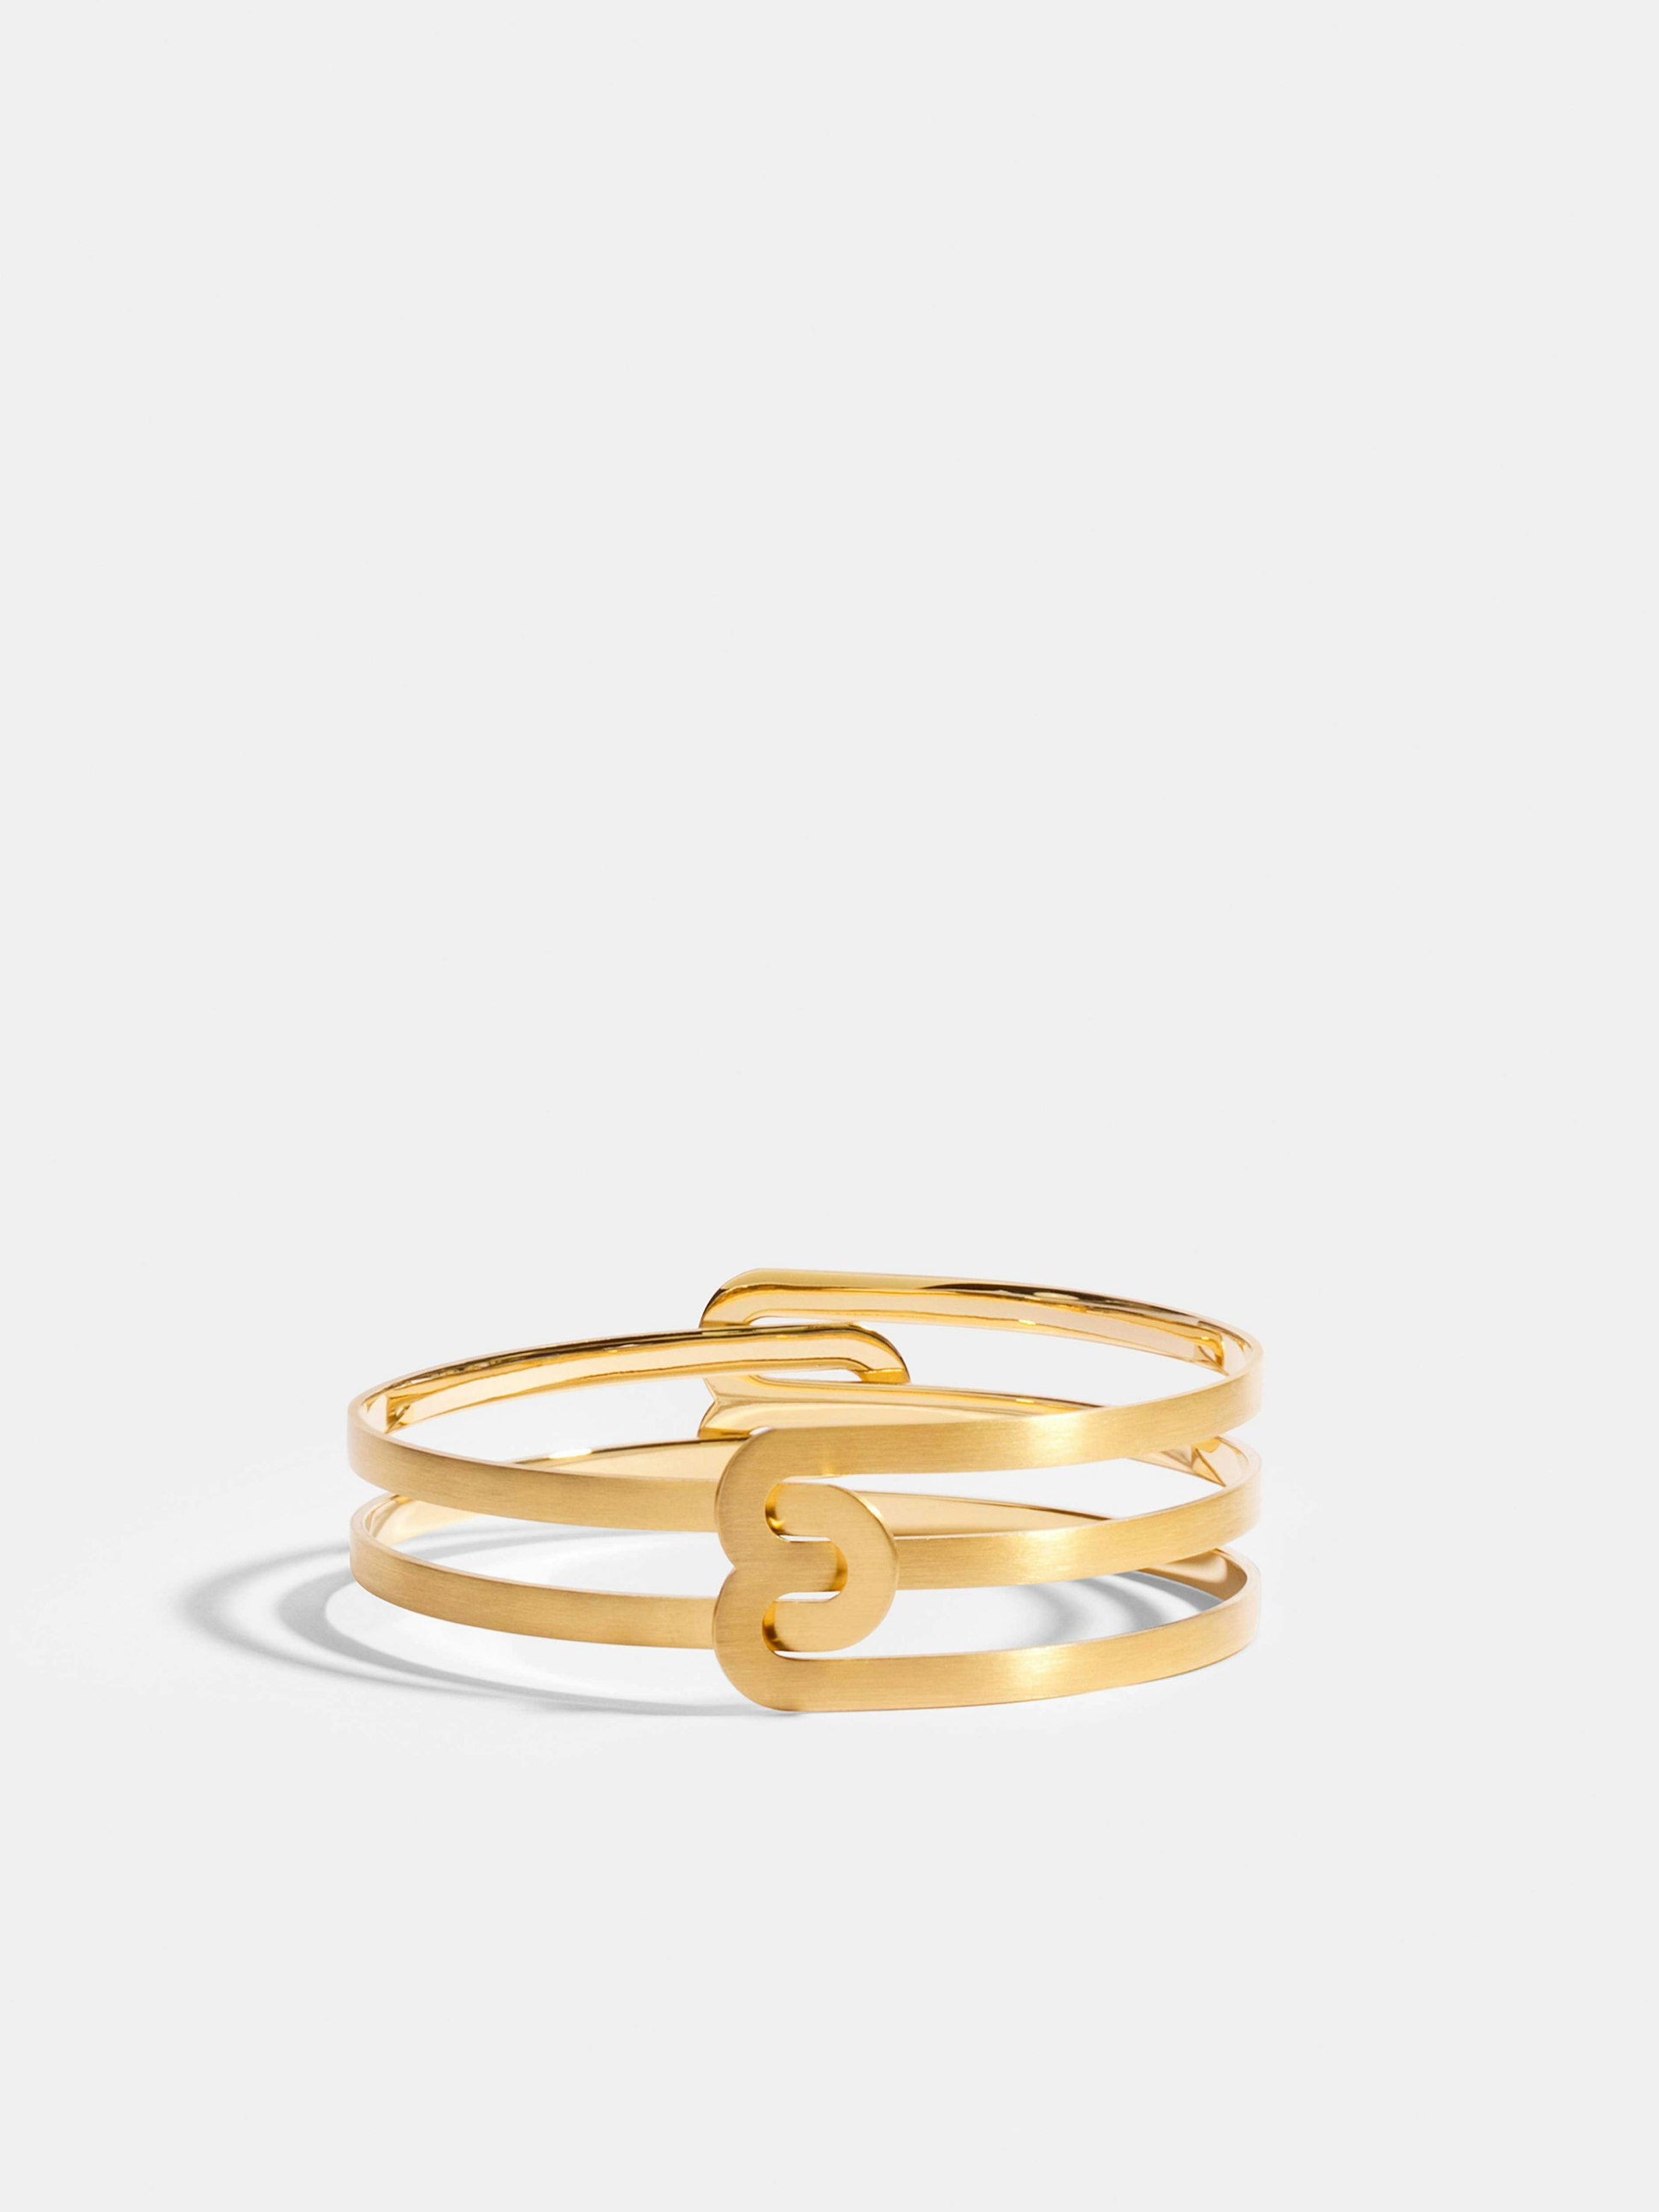 Bracelet Étreintes en Or jaune éthique 18 carats certifié Fairmined composé d'un demi-bracelet simple finition brossée et d'un demi-bracelet double finition brossée.